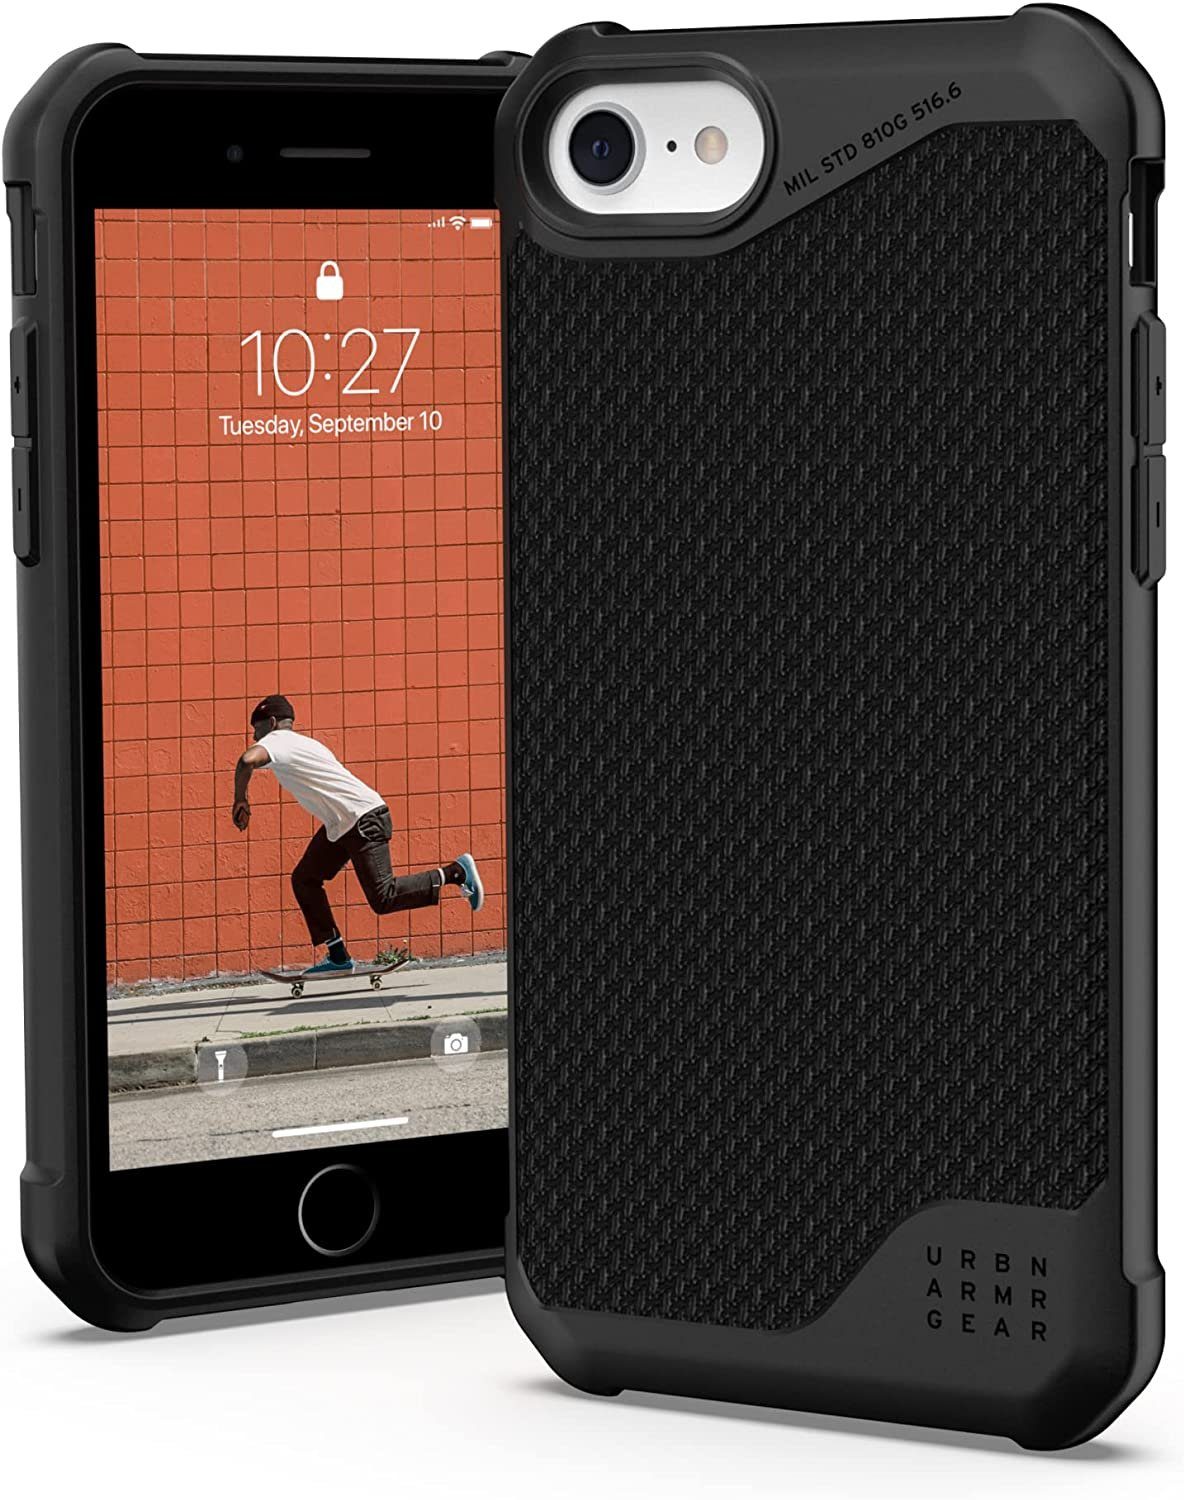 UAG Smartphone-Hülle Metropolis LT, [Apple iPhone SE Case aus  Premium-Materialien, Wireless-Charging kompatibel, Sturz- und stoßfest nach  US-Militärstandard, Besonders robuste iPhone Hülle] - schwarz